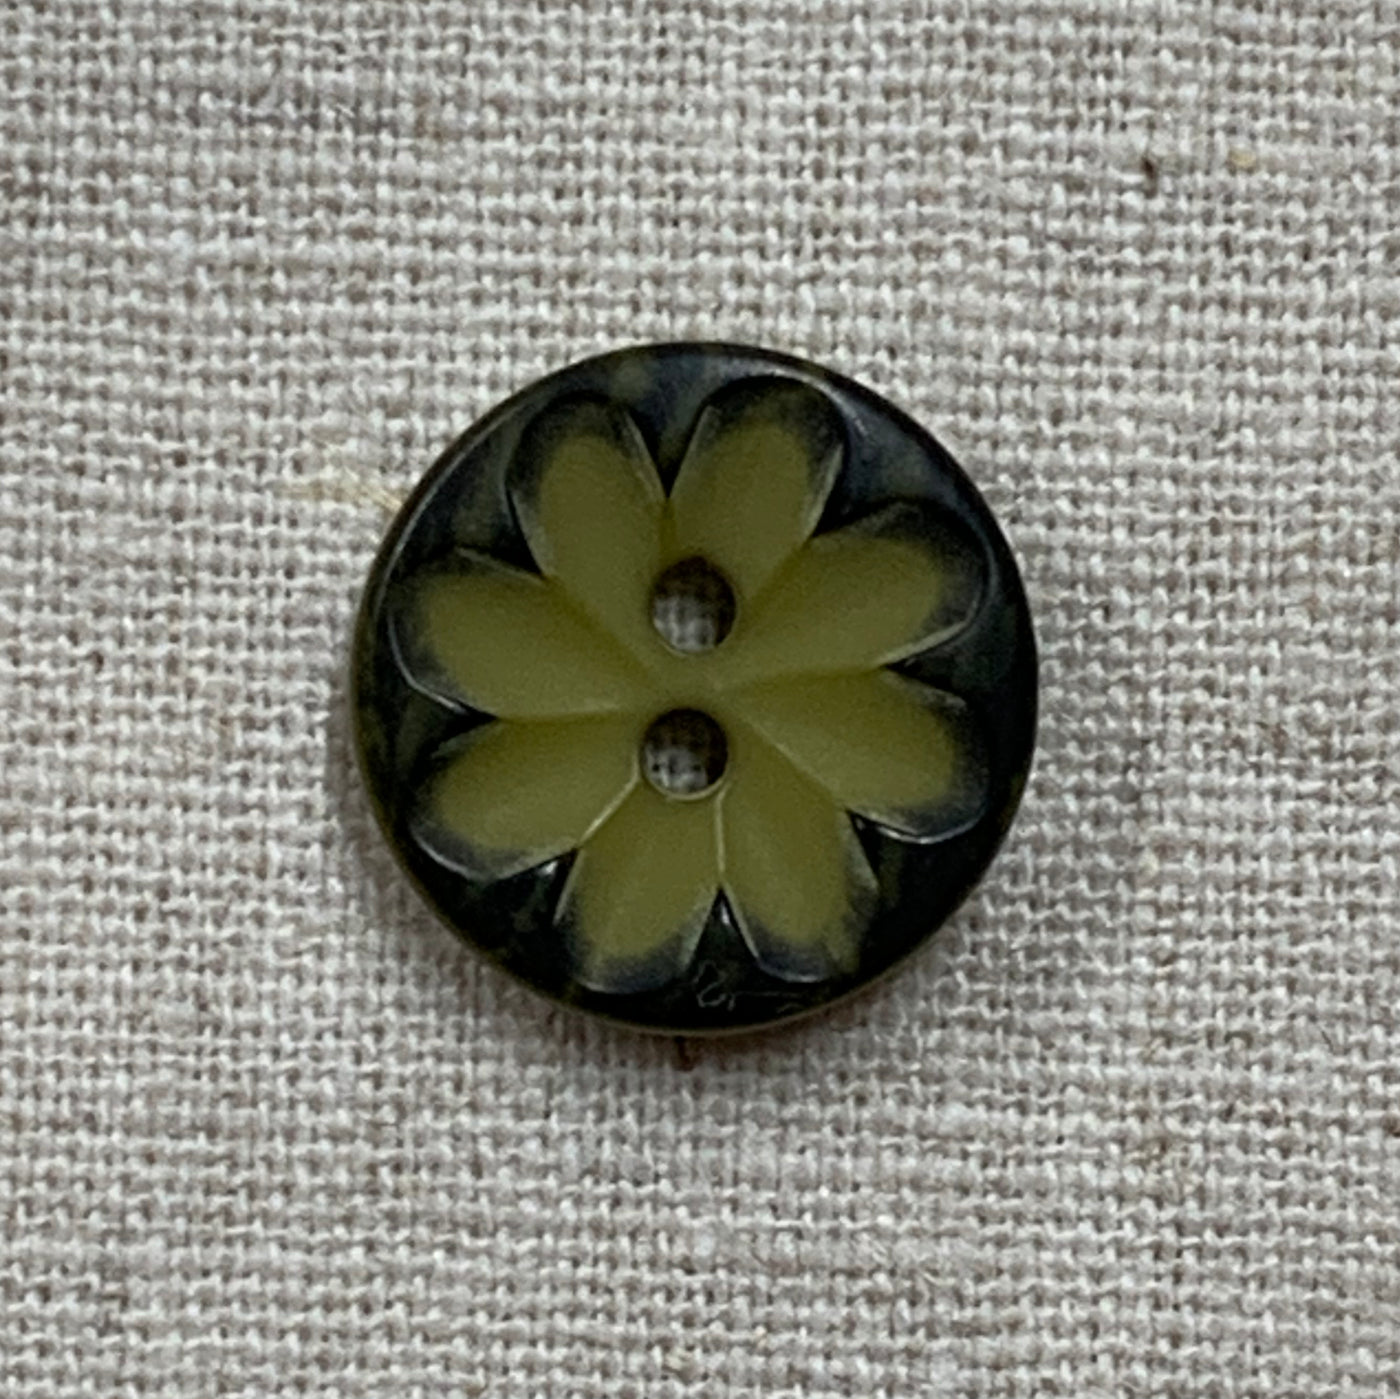 Flower Buttons (15mm)